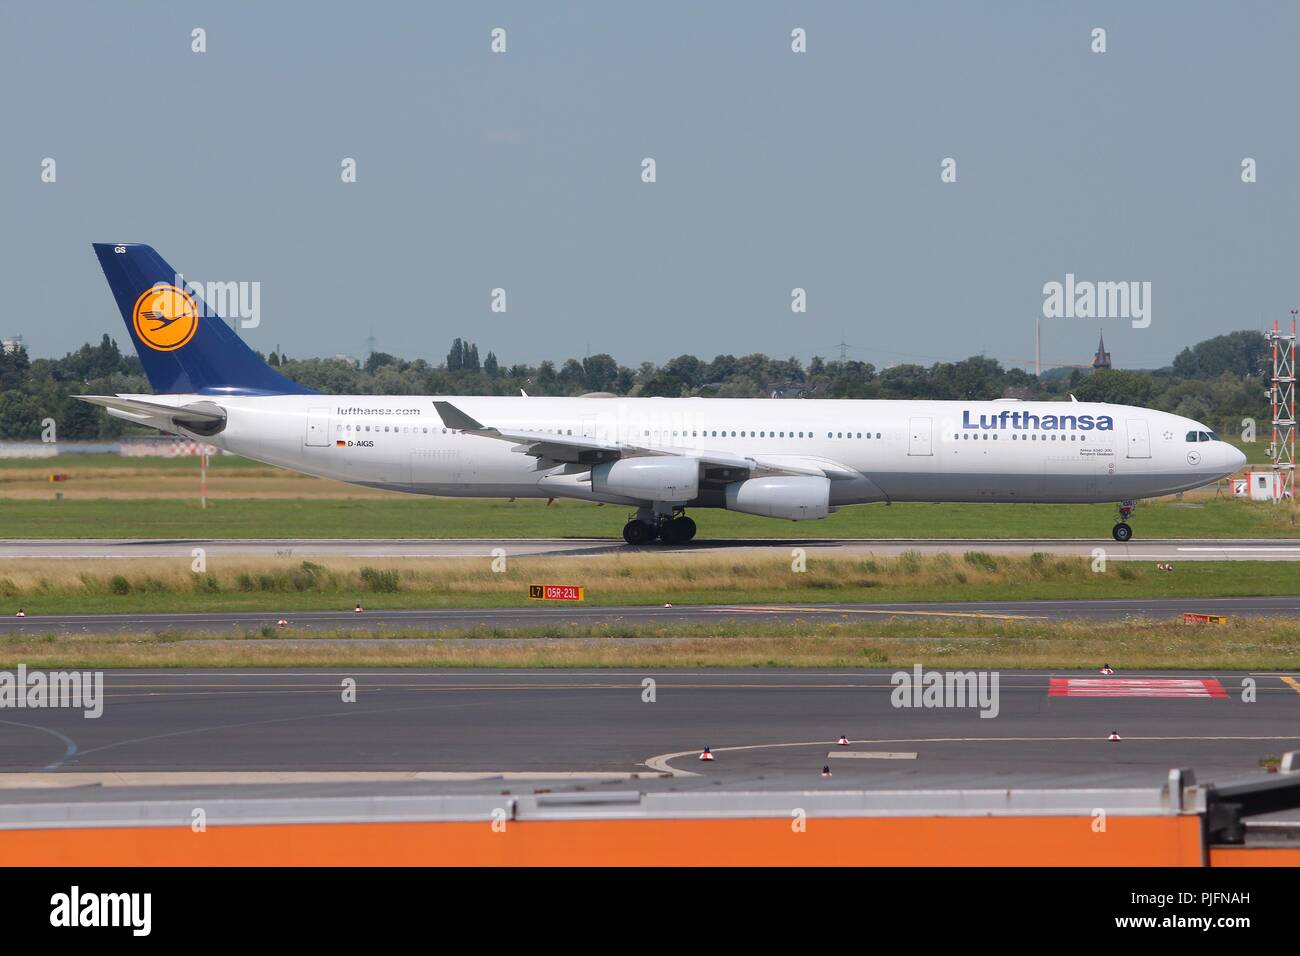 DUSSELDORF, Germania - 8 Luglio 2013: Lufthansa sbarca in aeroporto di Dusseldorf, Germania. Gruppo Lufthansa portato oltre 103 milioni di passeggeri nel 2012. Foto Stock